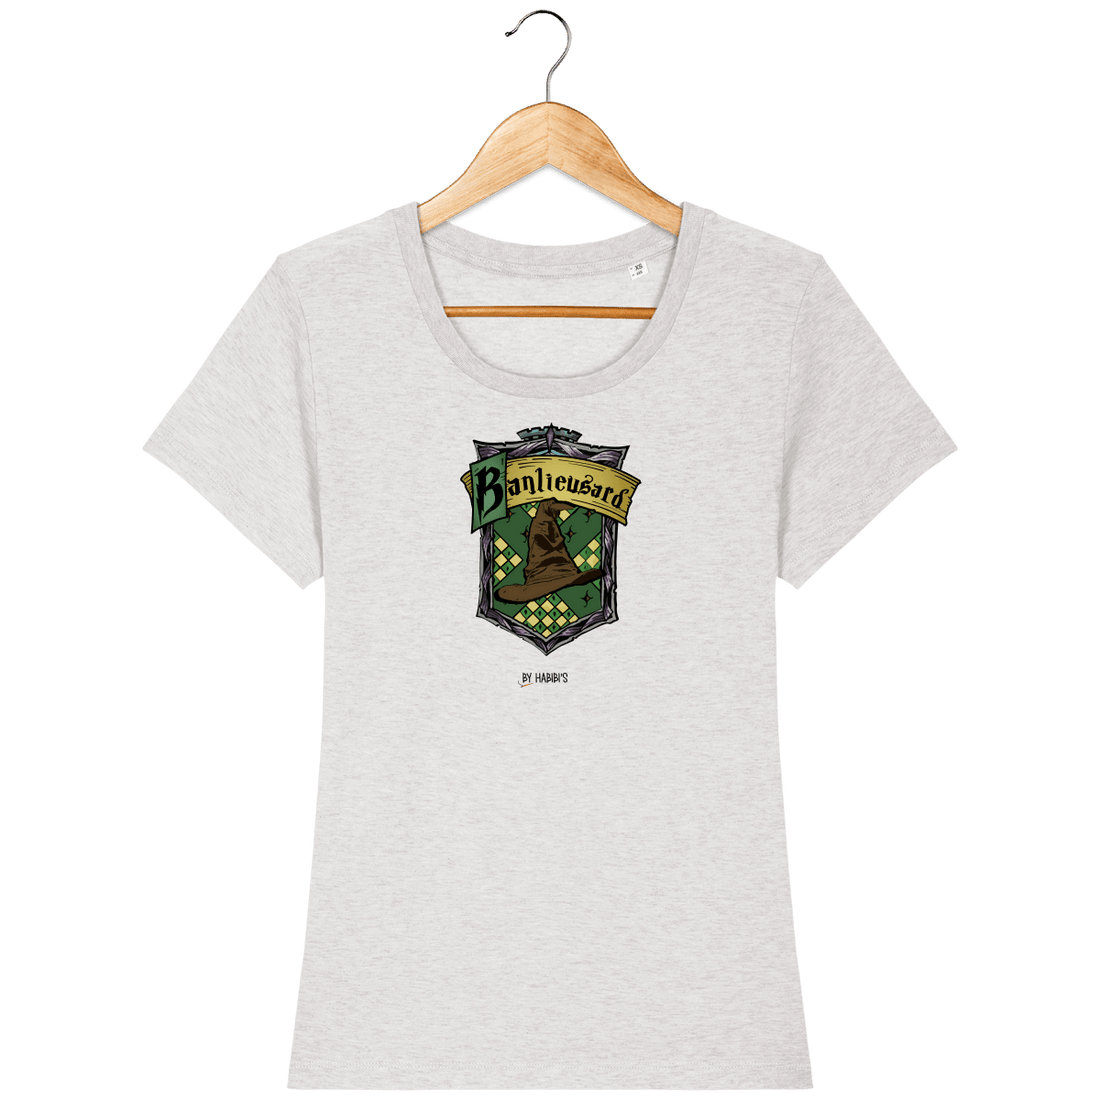 Femme>Tee-shirts - T-shirt Femme <br> Serpentard Banlieusard